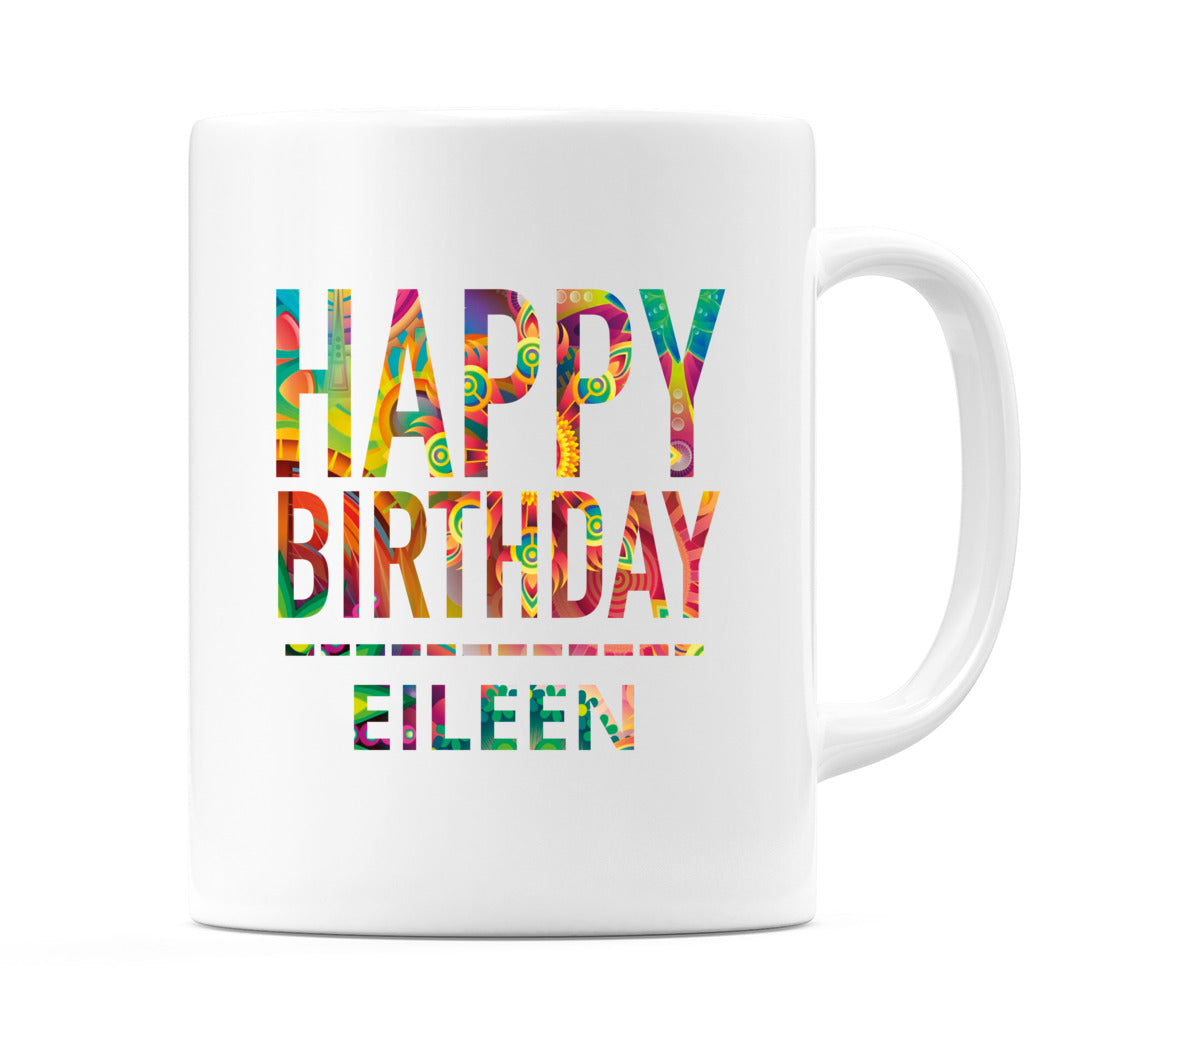 Happy Birthday Eileen (Tie Dye Effect) Mug Cup by WeDoMugs